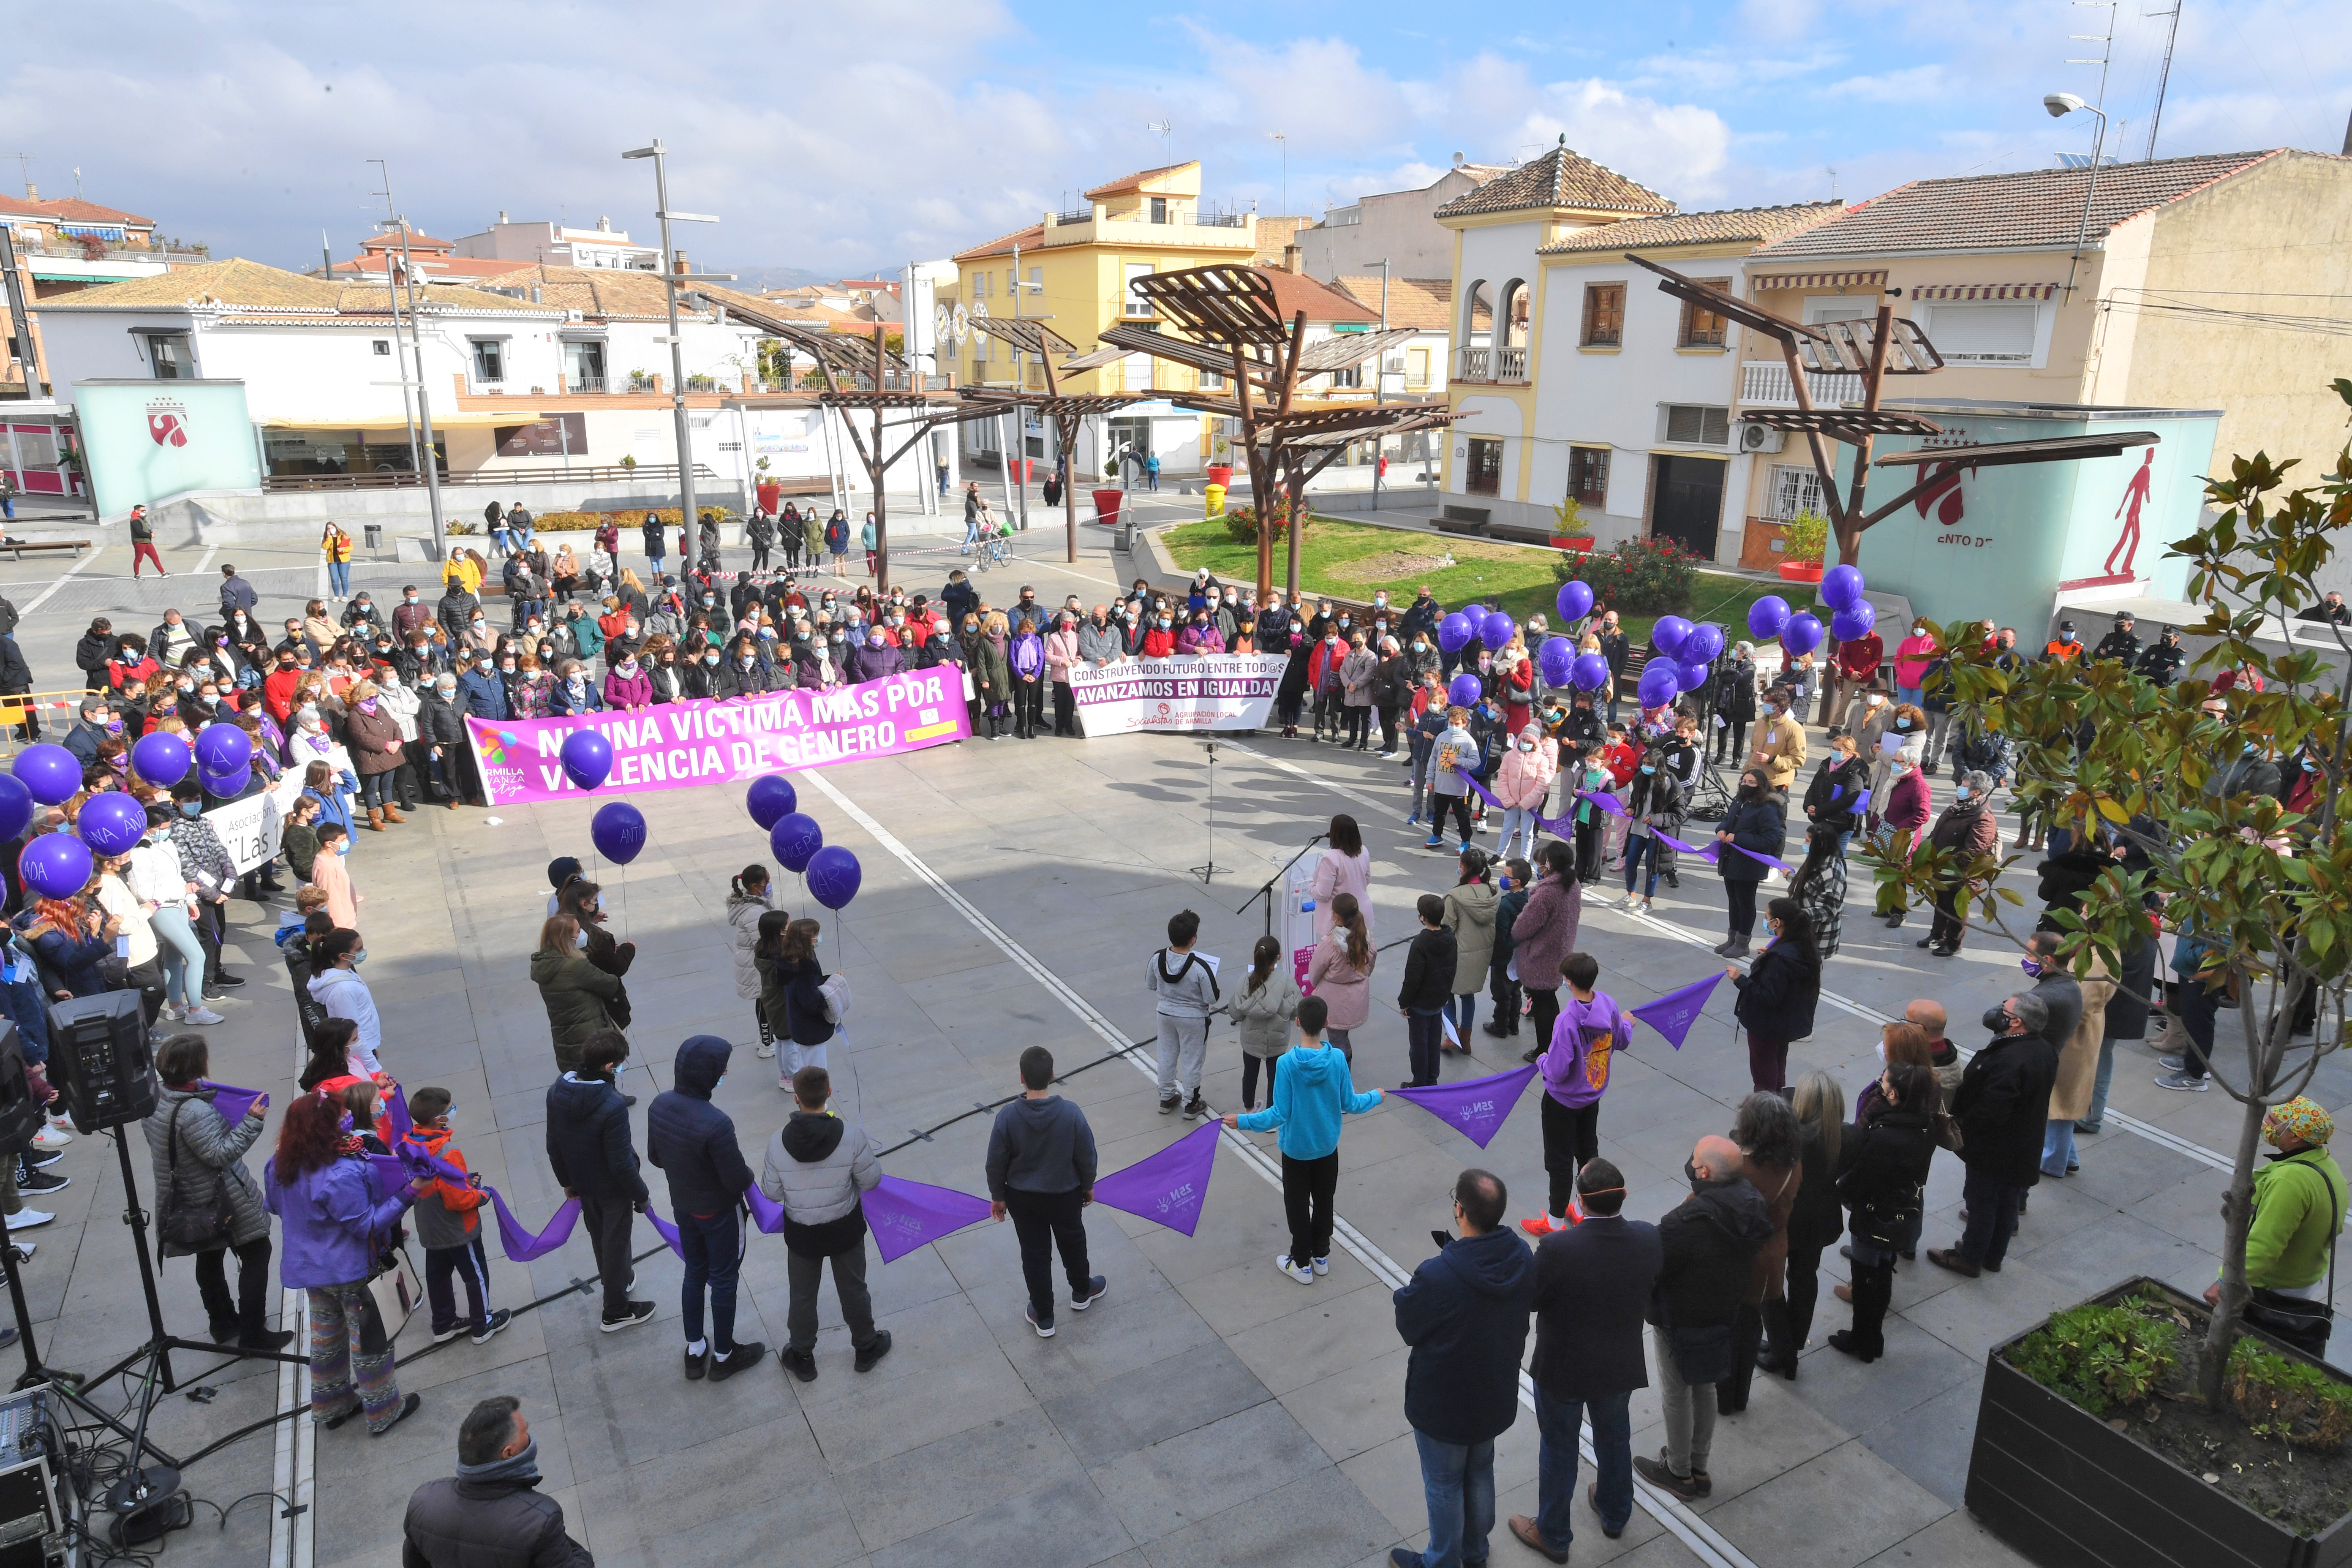 La alcaldesa de Armilla pide unidad para luchar contra la violencia de género